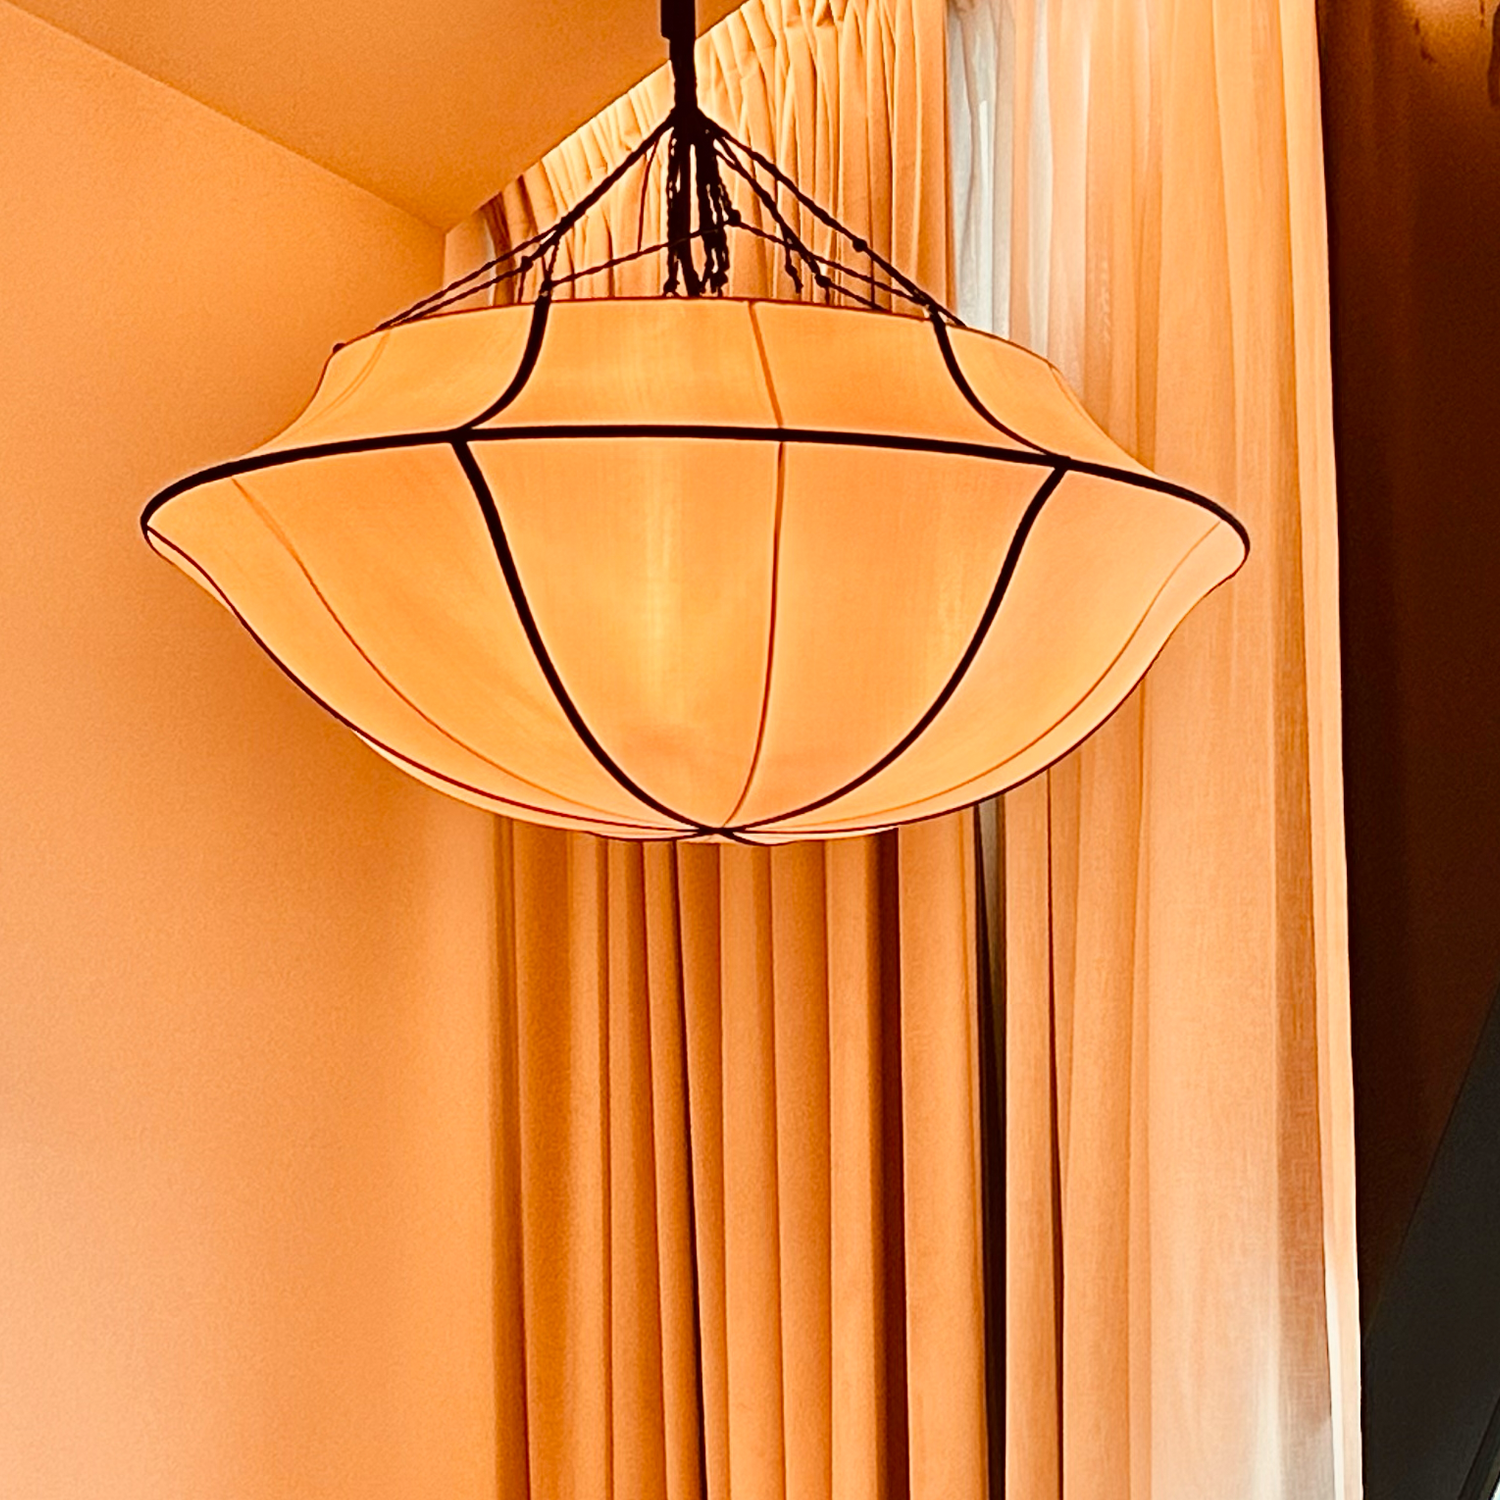 Indochina Umbrella - Ceiling lamp